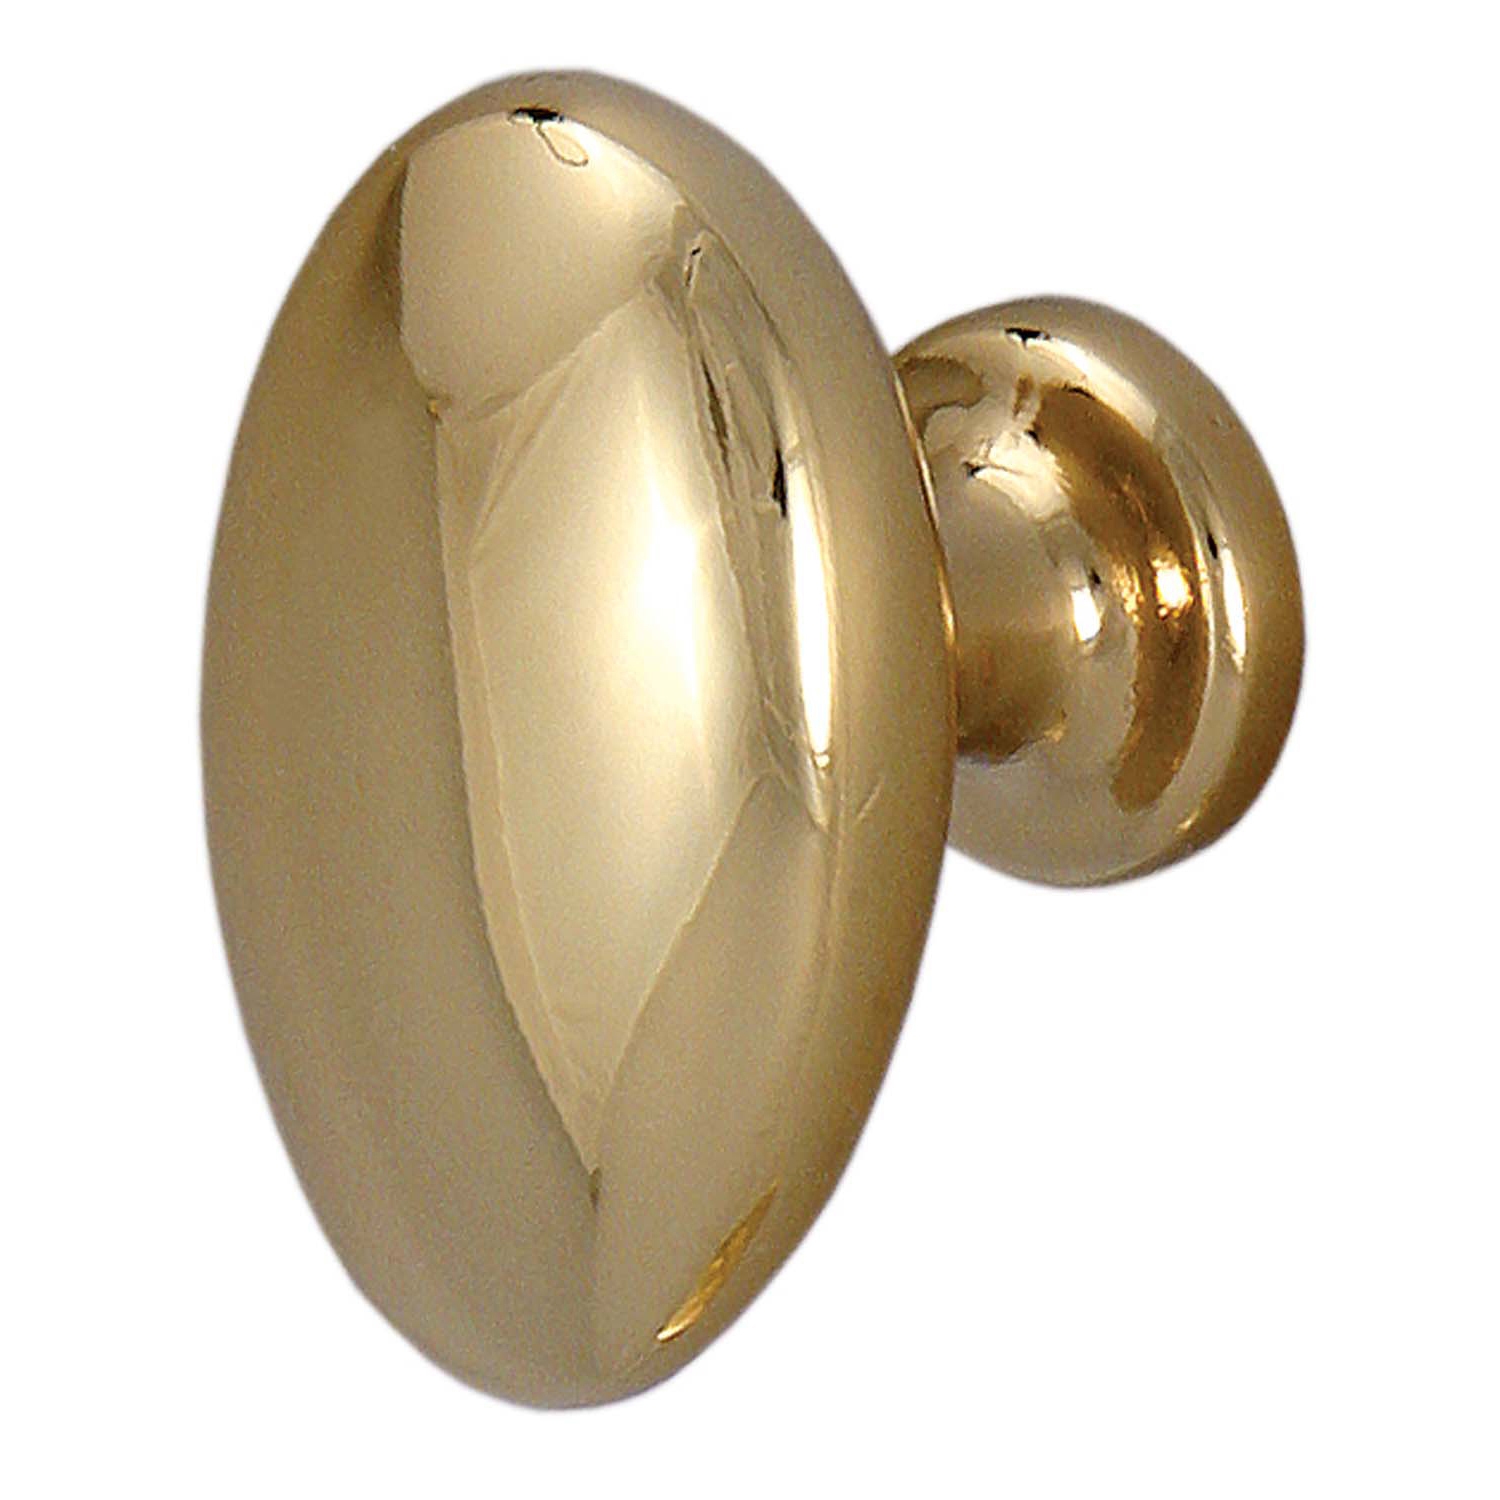 Buton pentru mobila, metalic, auriu, M 480.85.20, 35 x 23 x 27 mm